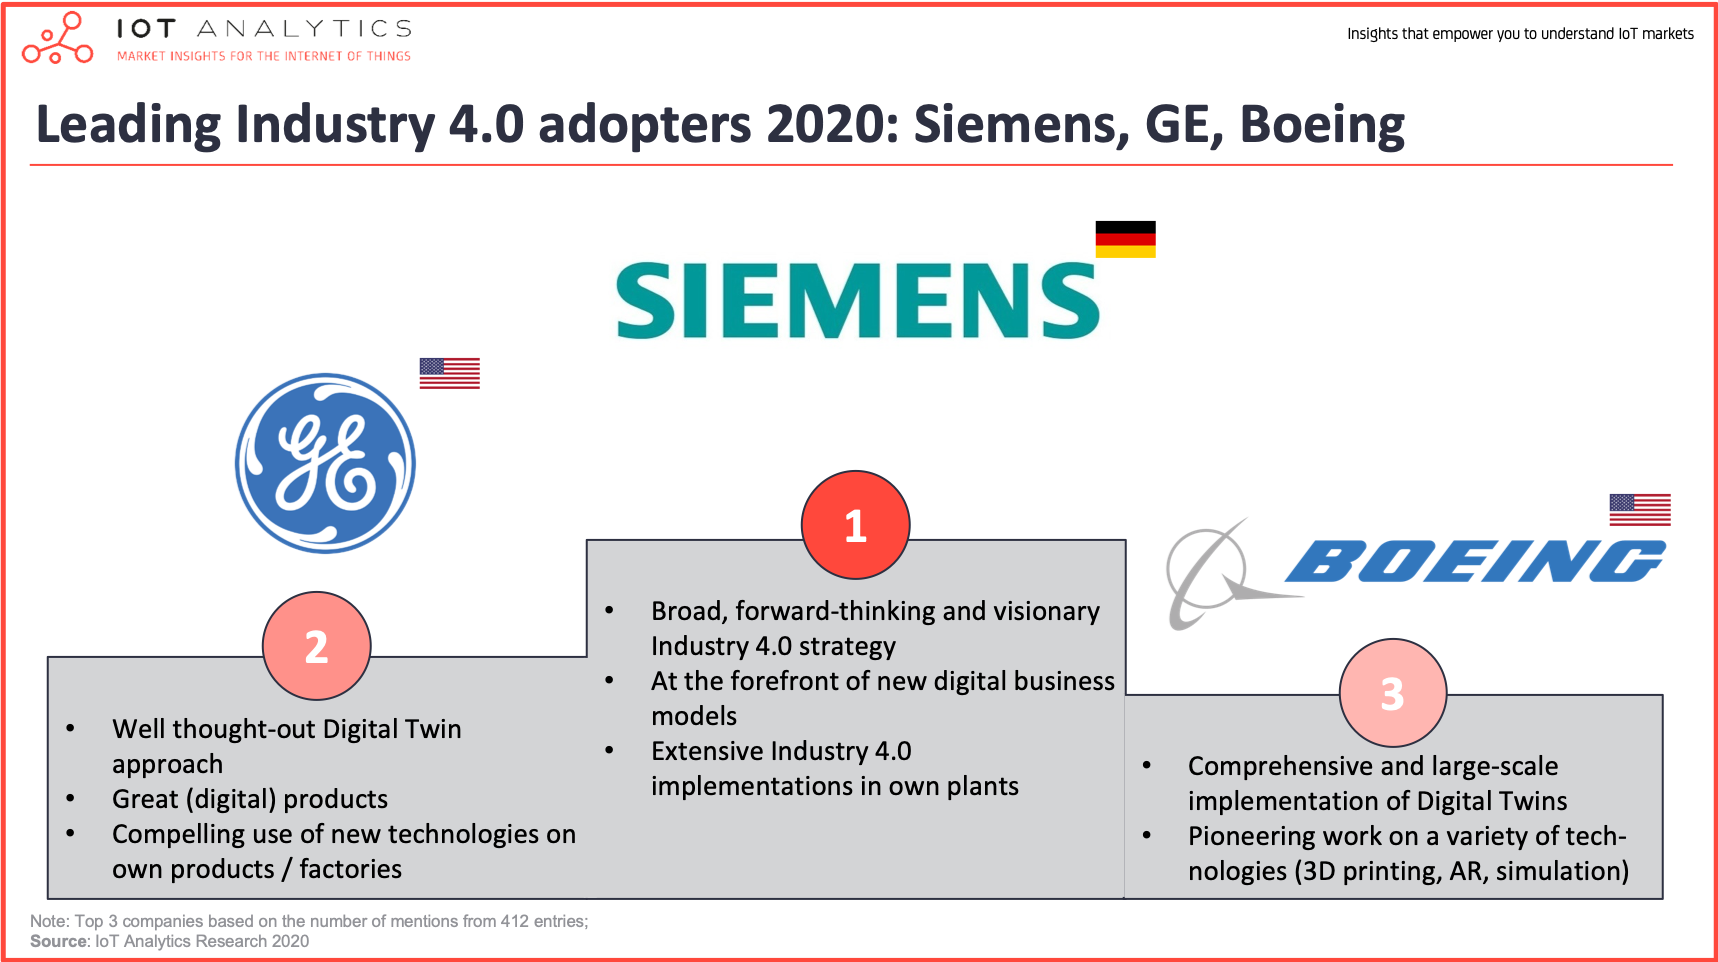 Leading Industry 4.0 adopters 2020- Siemens, GE, Boeing